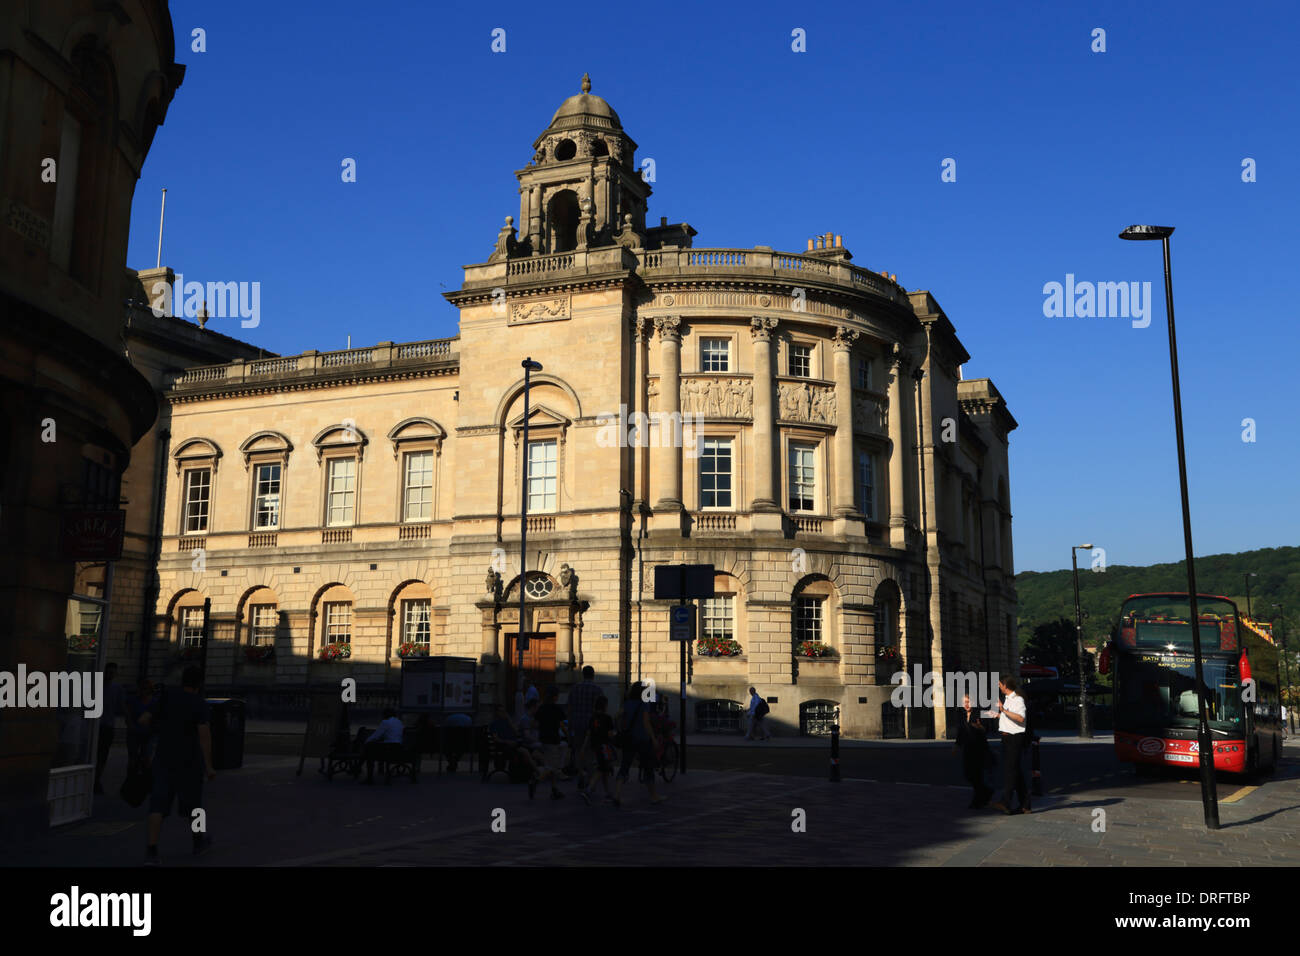 Un hermoso edificio georgiano, en la esquina de las calles alta y baratos, contra un cielo azul claro, en el Patrimonio Mundial de la ciudad de Bath en Somerset, Reino Unido. Foto de stock